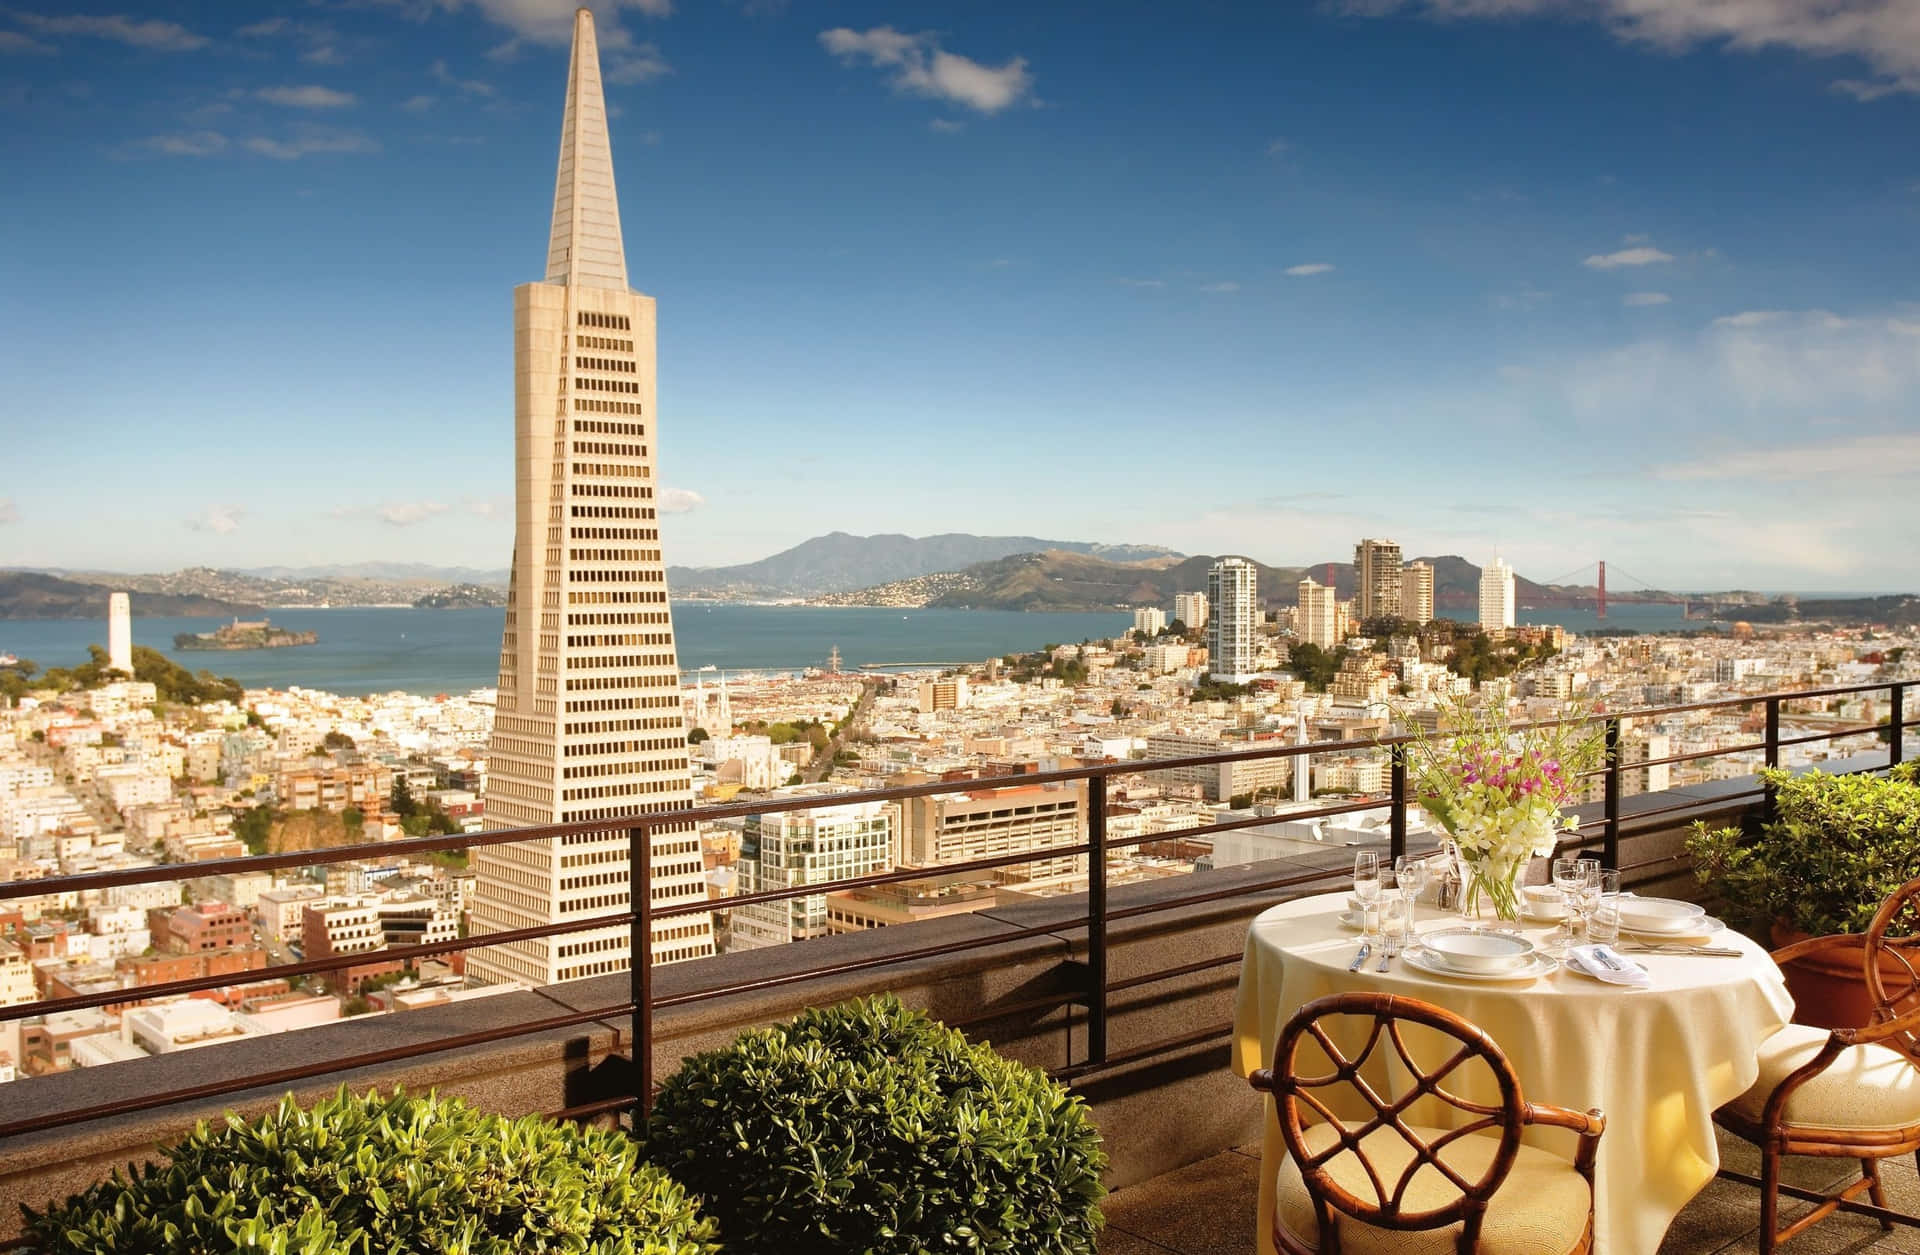 Transamericapyramide - Der Beste Hintergrund Für San Francisco